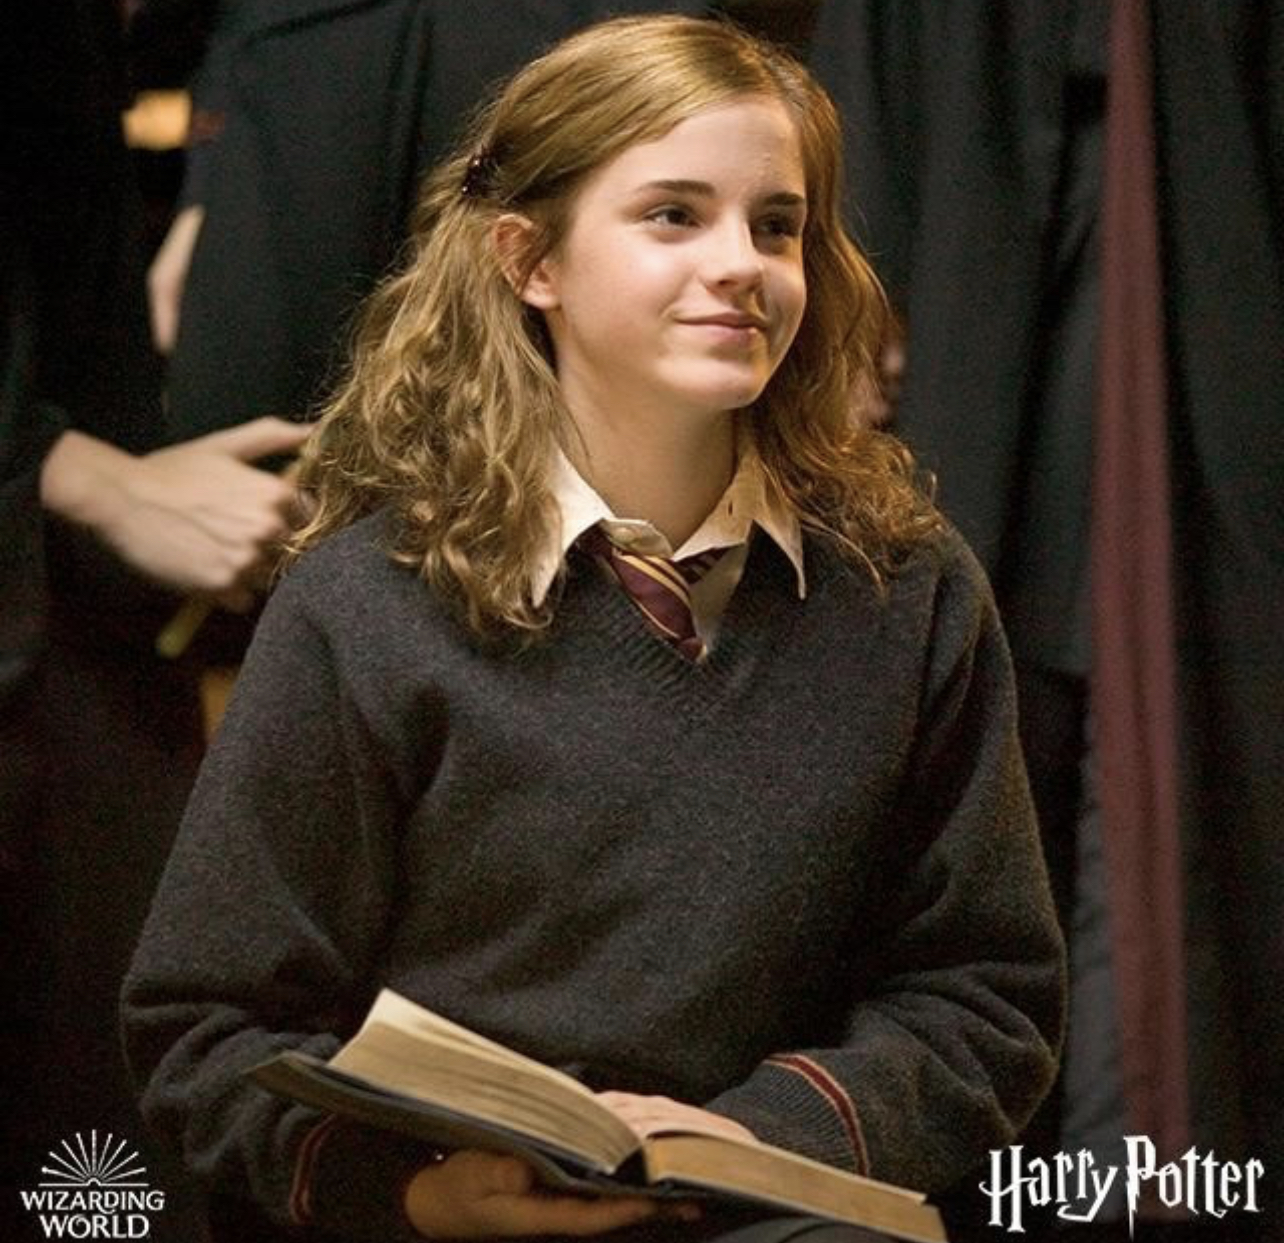 Evo zašto je Emma Watson umalo odustala od uloge u “Harry Potter”-u